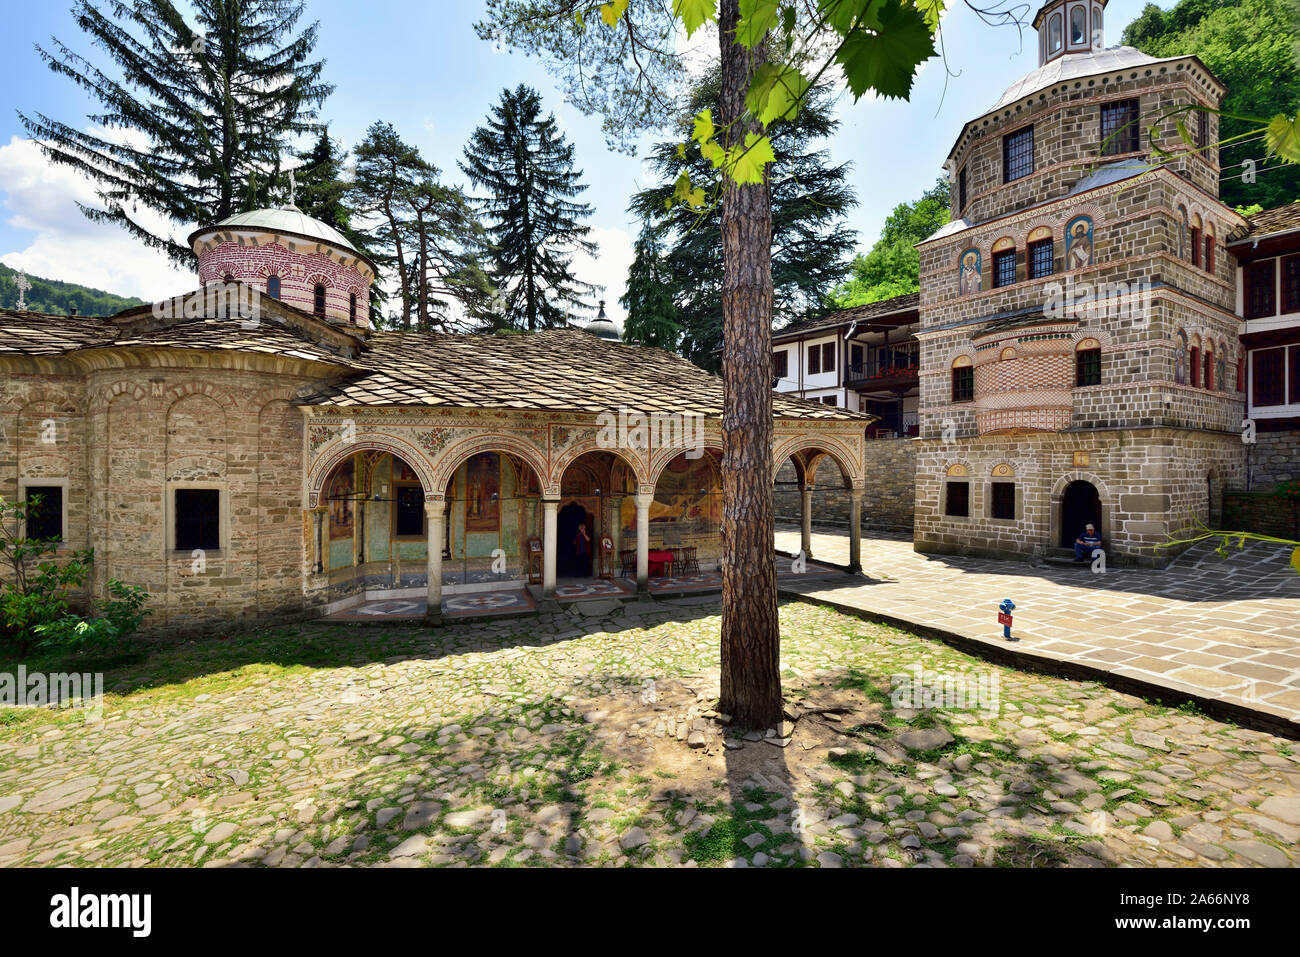 Le monastère de Troyan (Monastère de la Dormition de la Mère de Dieu) est le troisième plus grand monastère de Bulgarie. Il est situé dans les montagnes des Balkans et a été fondé au 16ème siècle. L'extérieur peintures murales ont été peintes par Zahari Zograf. Bulgarie Banque D'Images